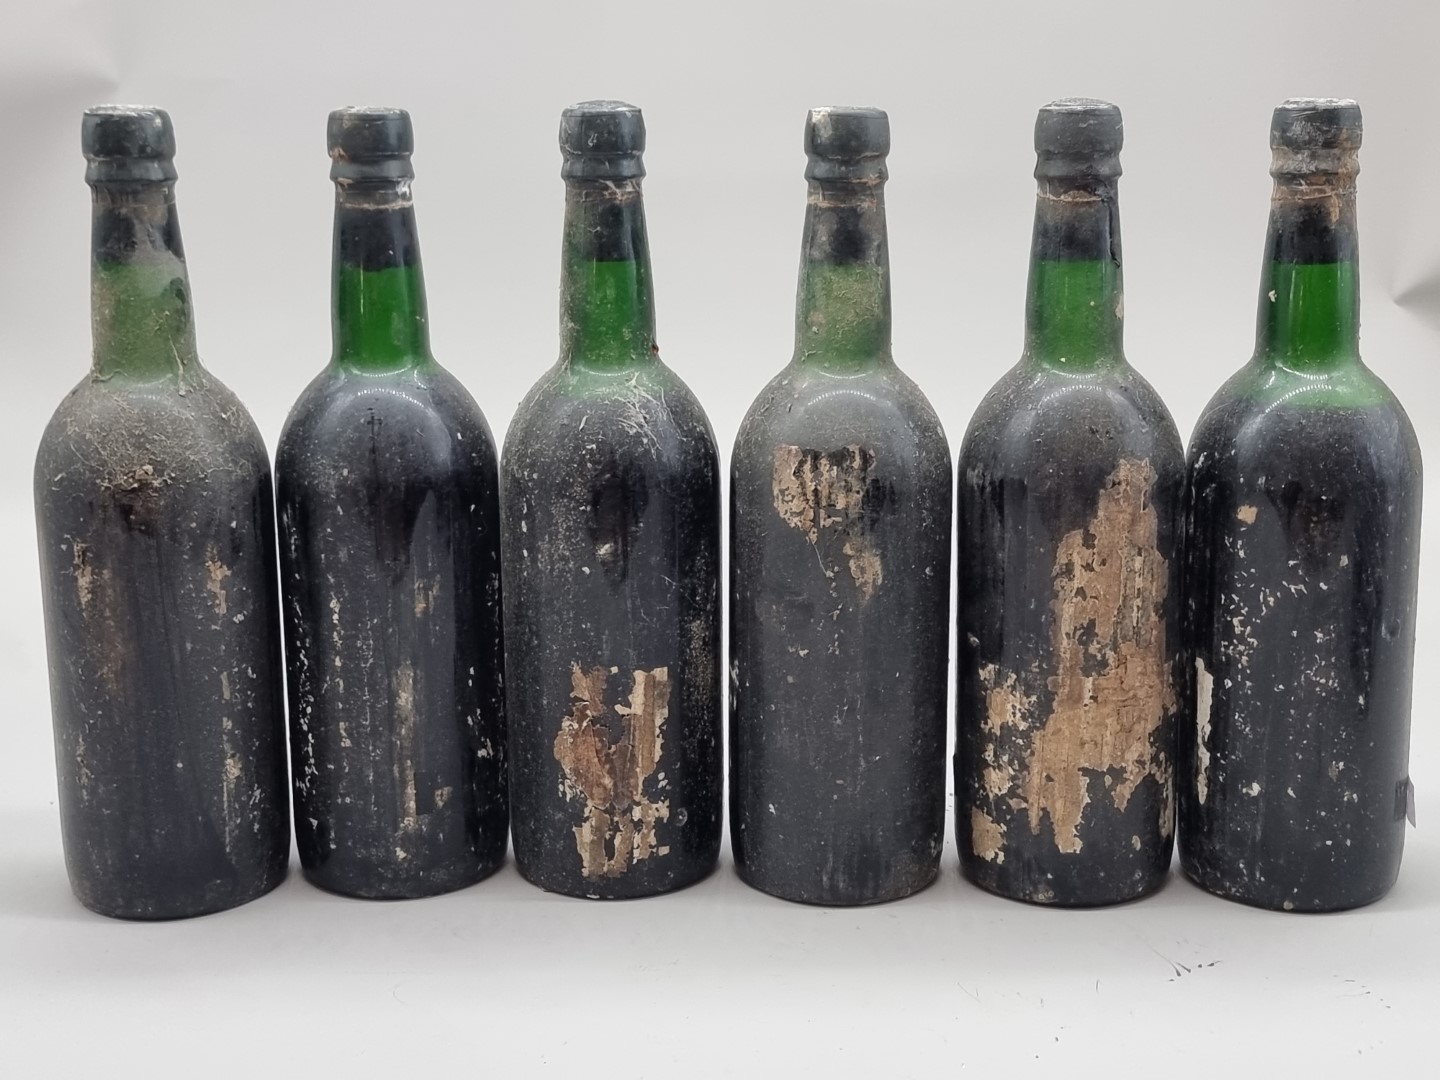 Six bottles of Taylor's 1966 Vintage Port, (no labels). (6)